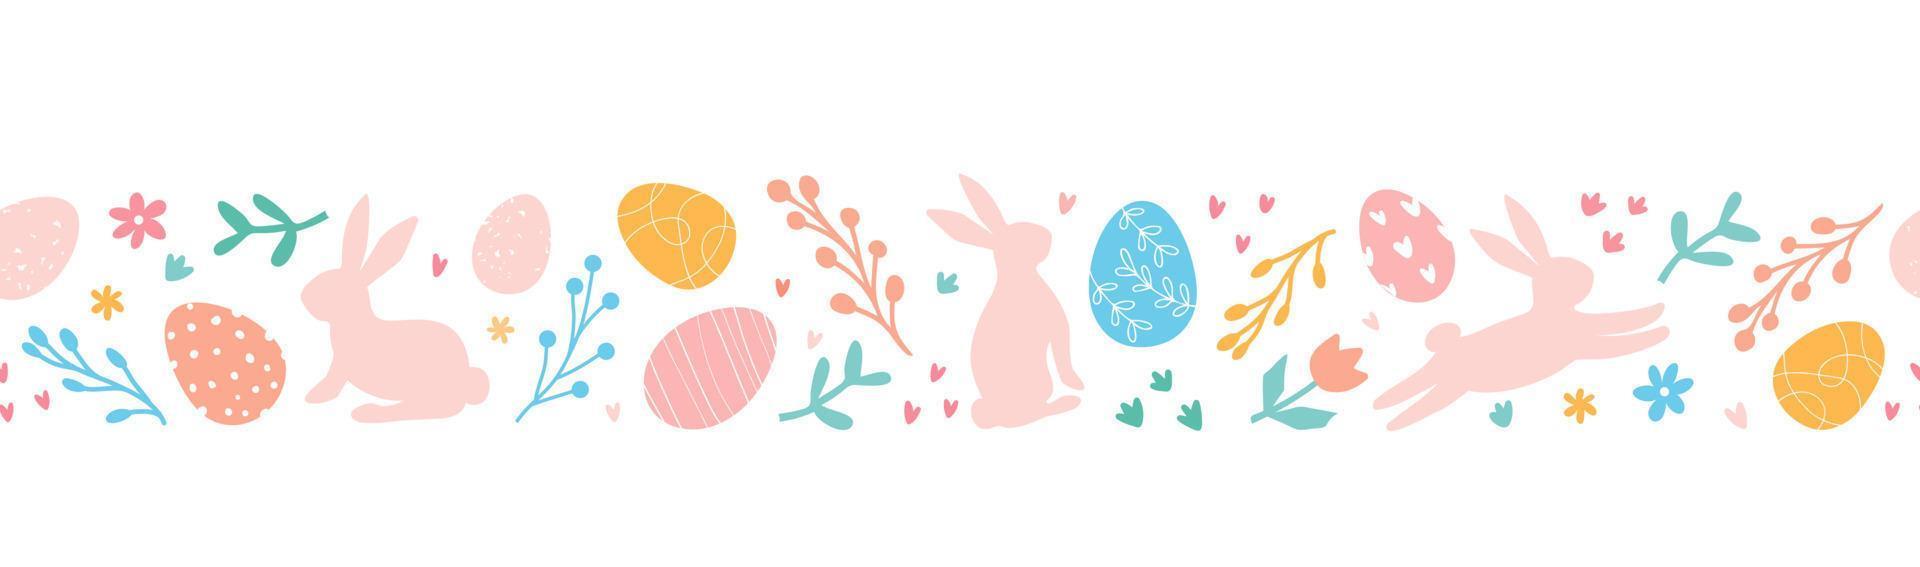 adorável mão desenhado Páscoa horizontal desatado padronizar com rabisco ovos, coelhos, flores Páscoa festivo fronteira. adequado para têxteis, bandeiras, papel de parede, invólucro papel. vetor